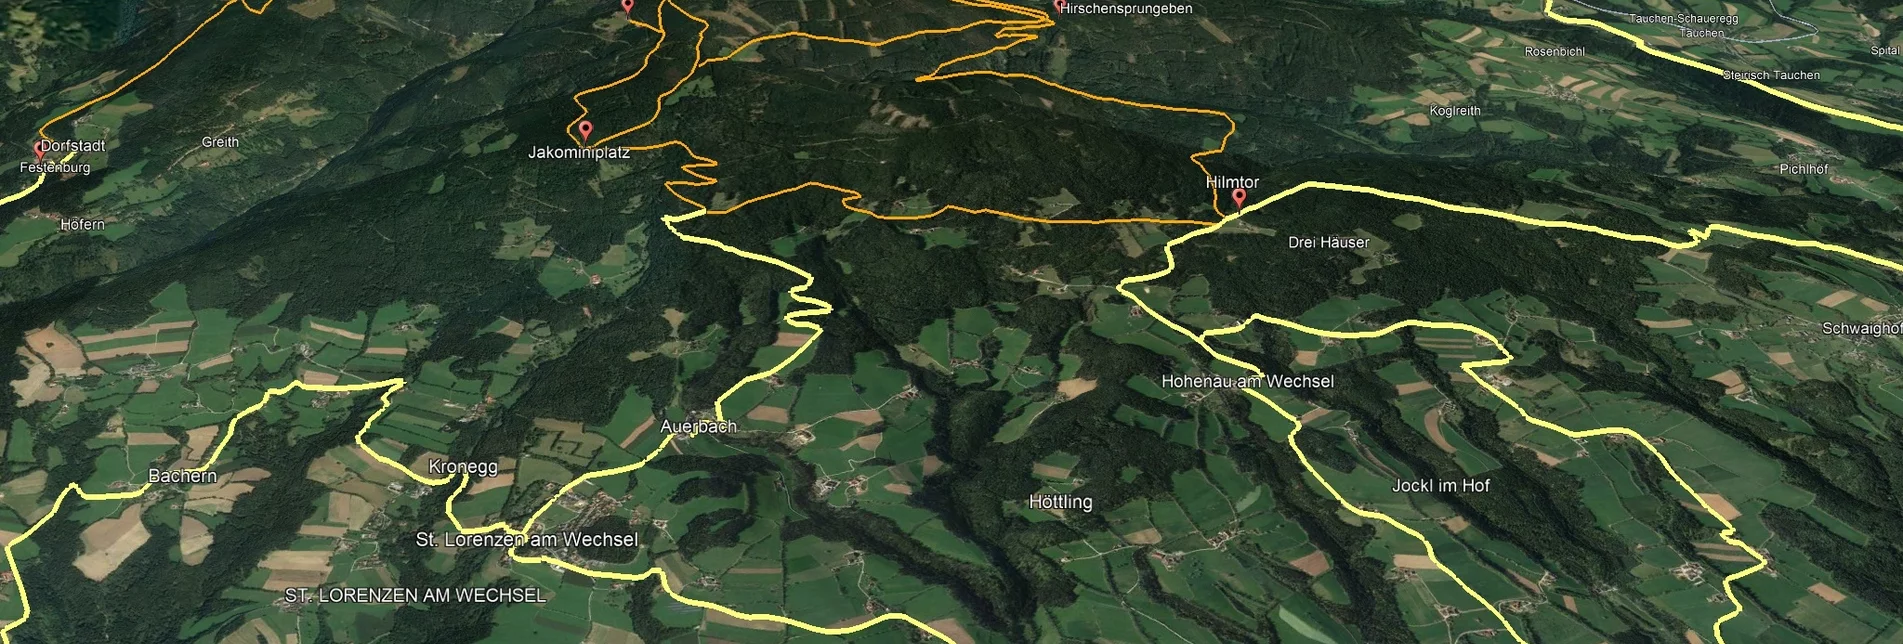 Mountainbike VORSCHAU Steirische Wexl Trails - Zubringer Dechantskirchen zum Hilmtor - Touren-Impression #1 | © Verein Tourismusentwicklung Steirischer Wechsel